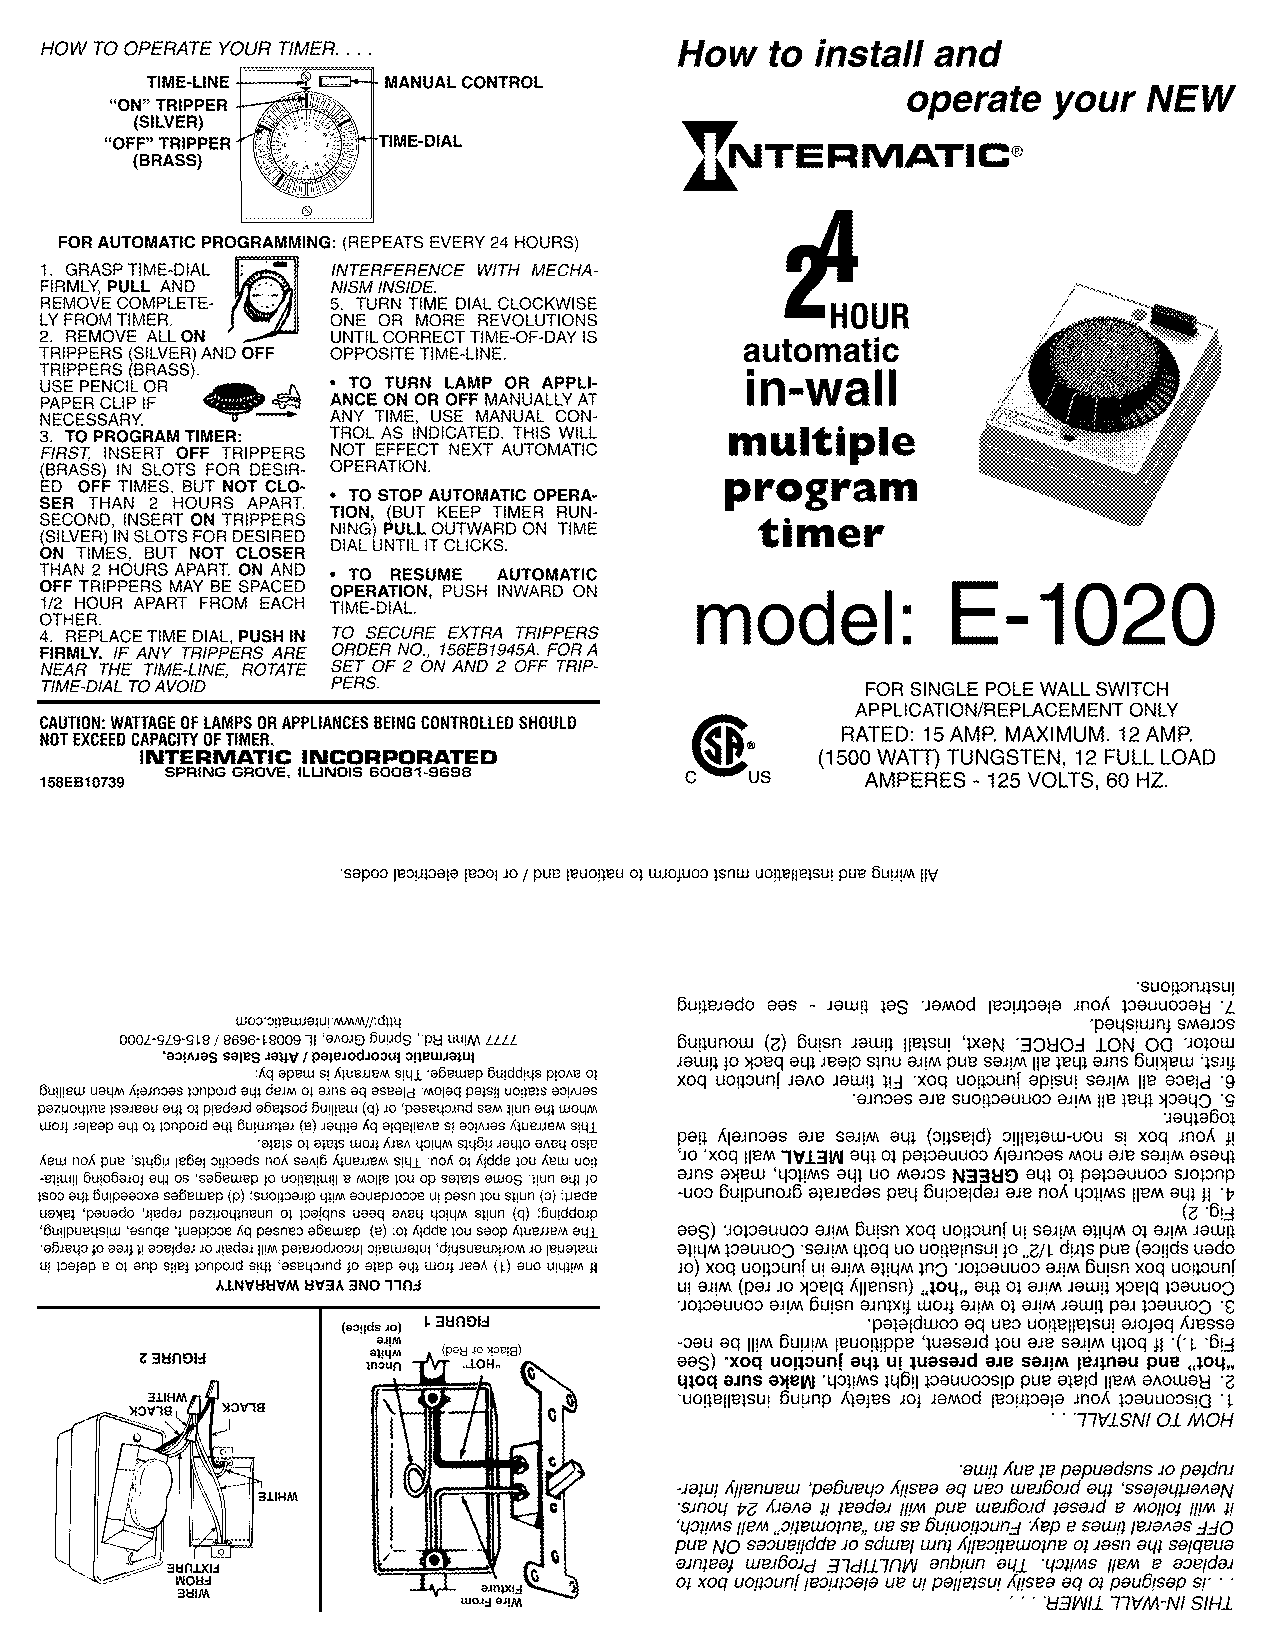 Intermatic E1020 User Manual